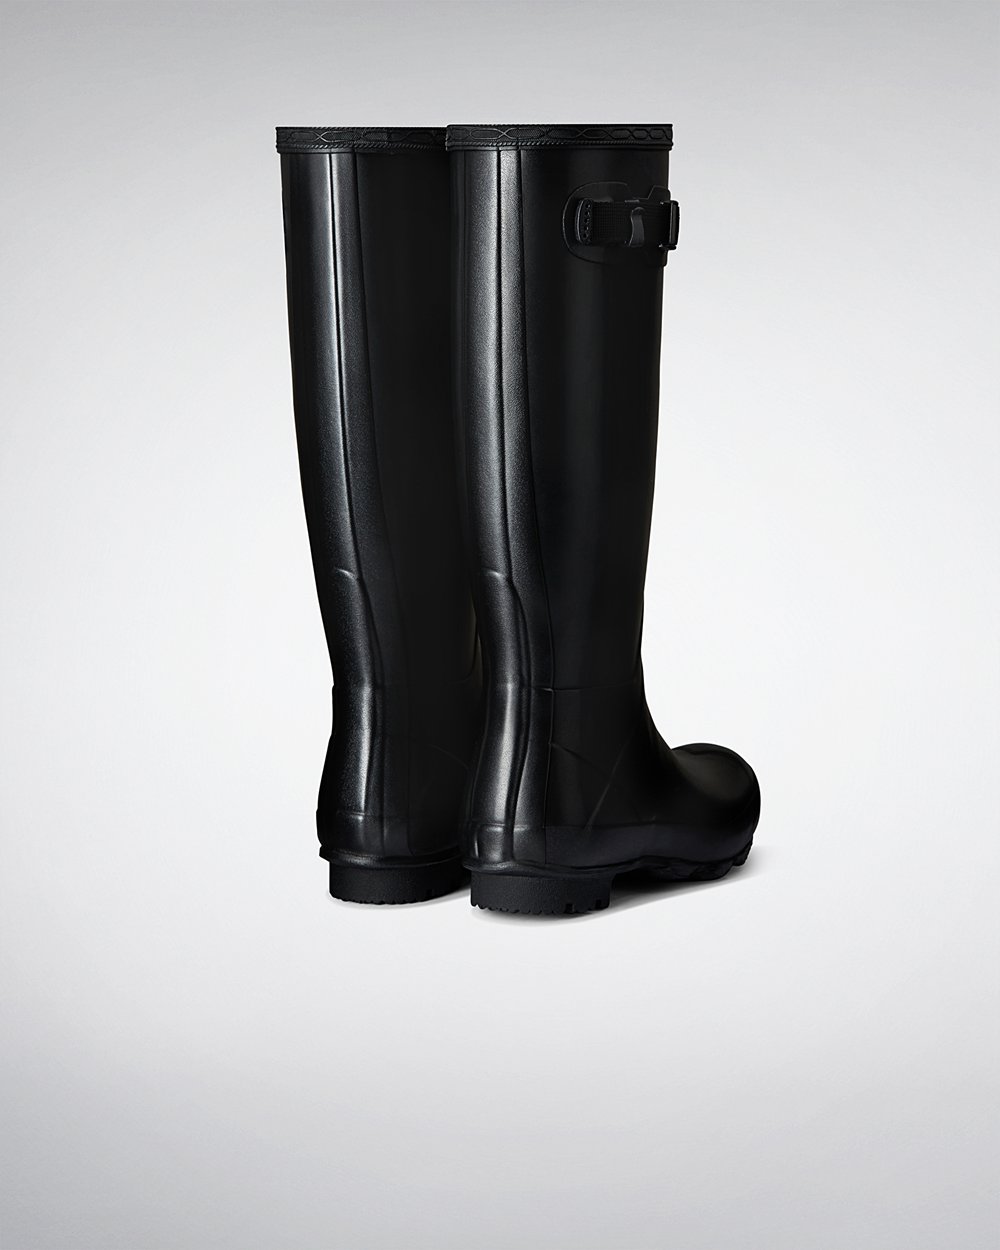 Womens Tall Rain Boots - Hunter Norris Field (93BQIAXVN) - Black